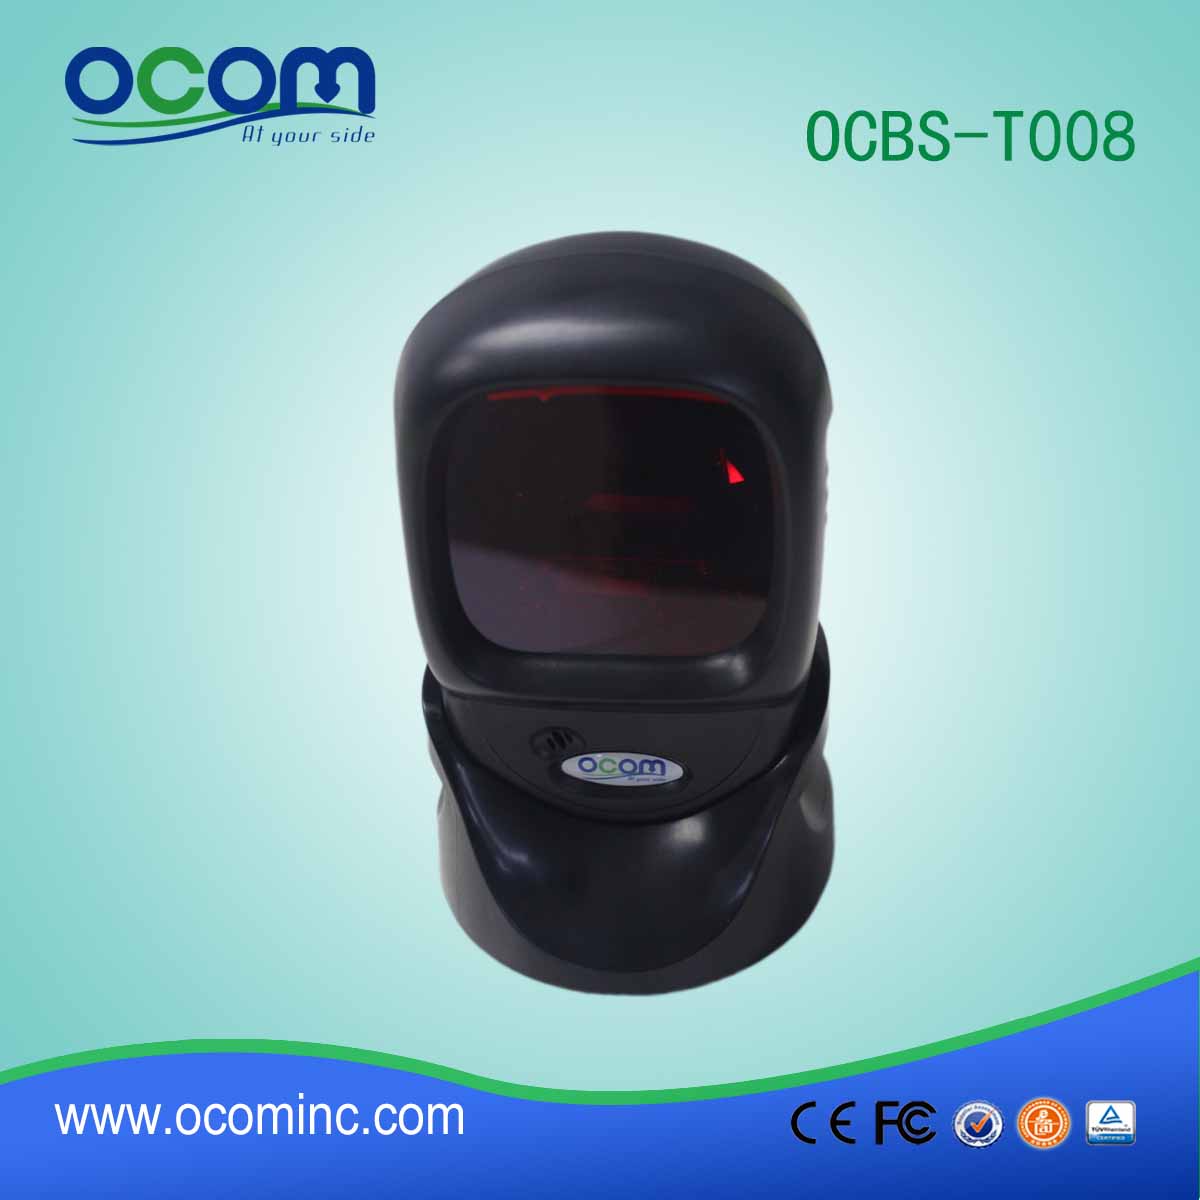 Omni сканер направленного настольного USB штрих-кода с большого расстояния-OCBs-T008